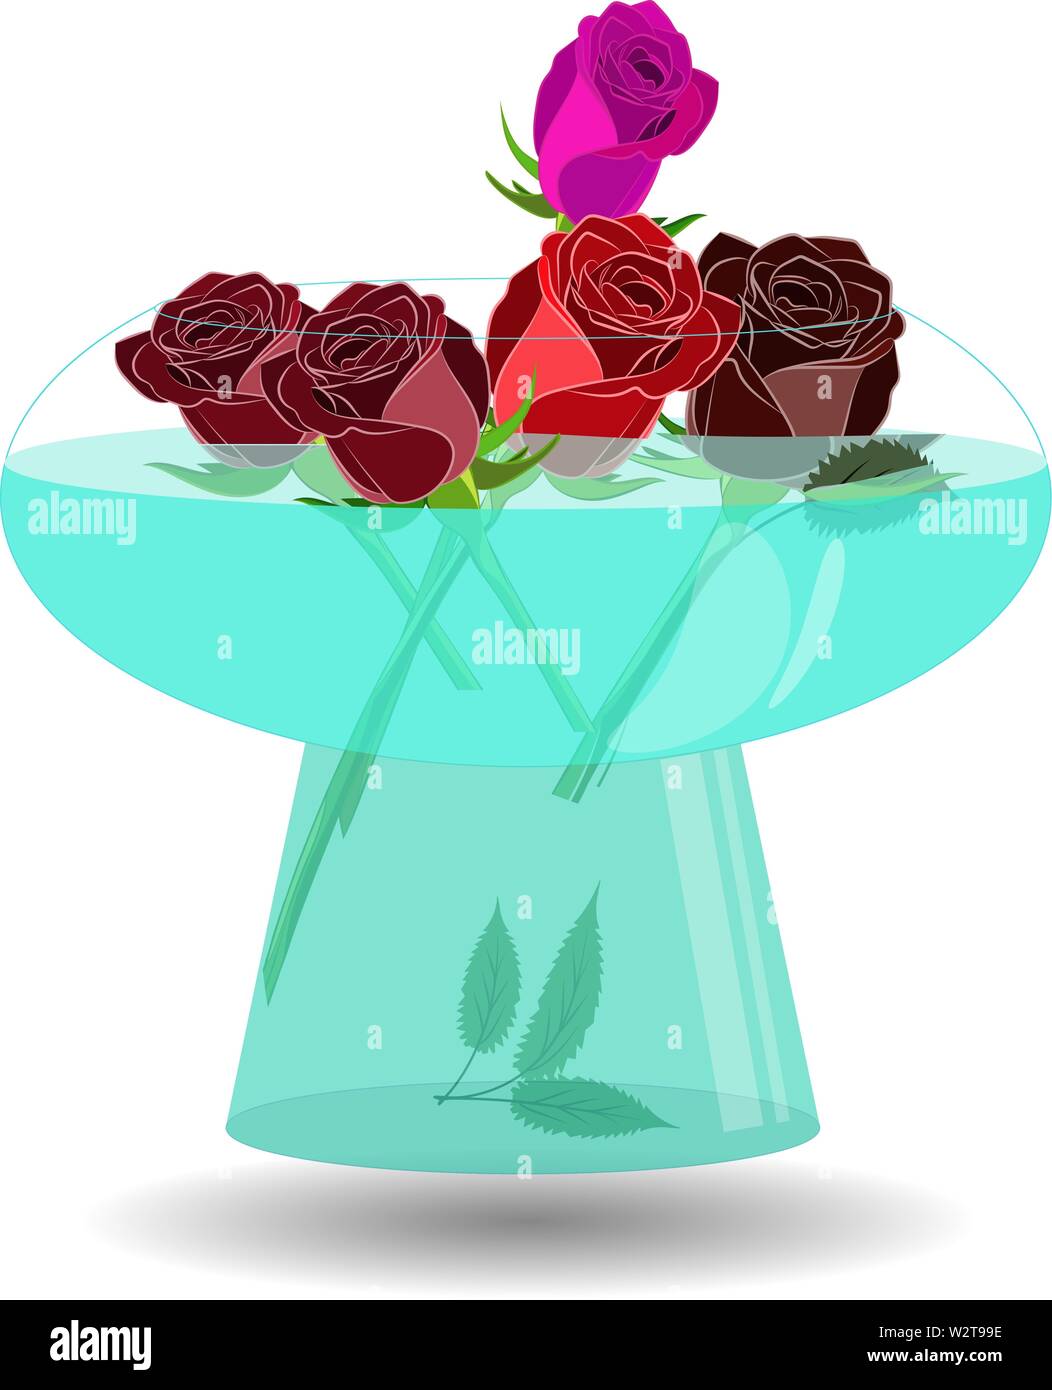 Blumenstrauß aus 5 Rosen in einer Vase mit Wasser. Vector Illustration schöne rote, violette und rote Rosen in Nizza transparente Schüssel mit Wasser Stock Vektor